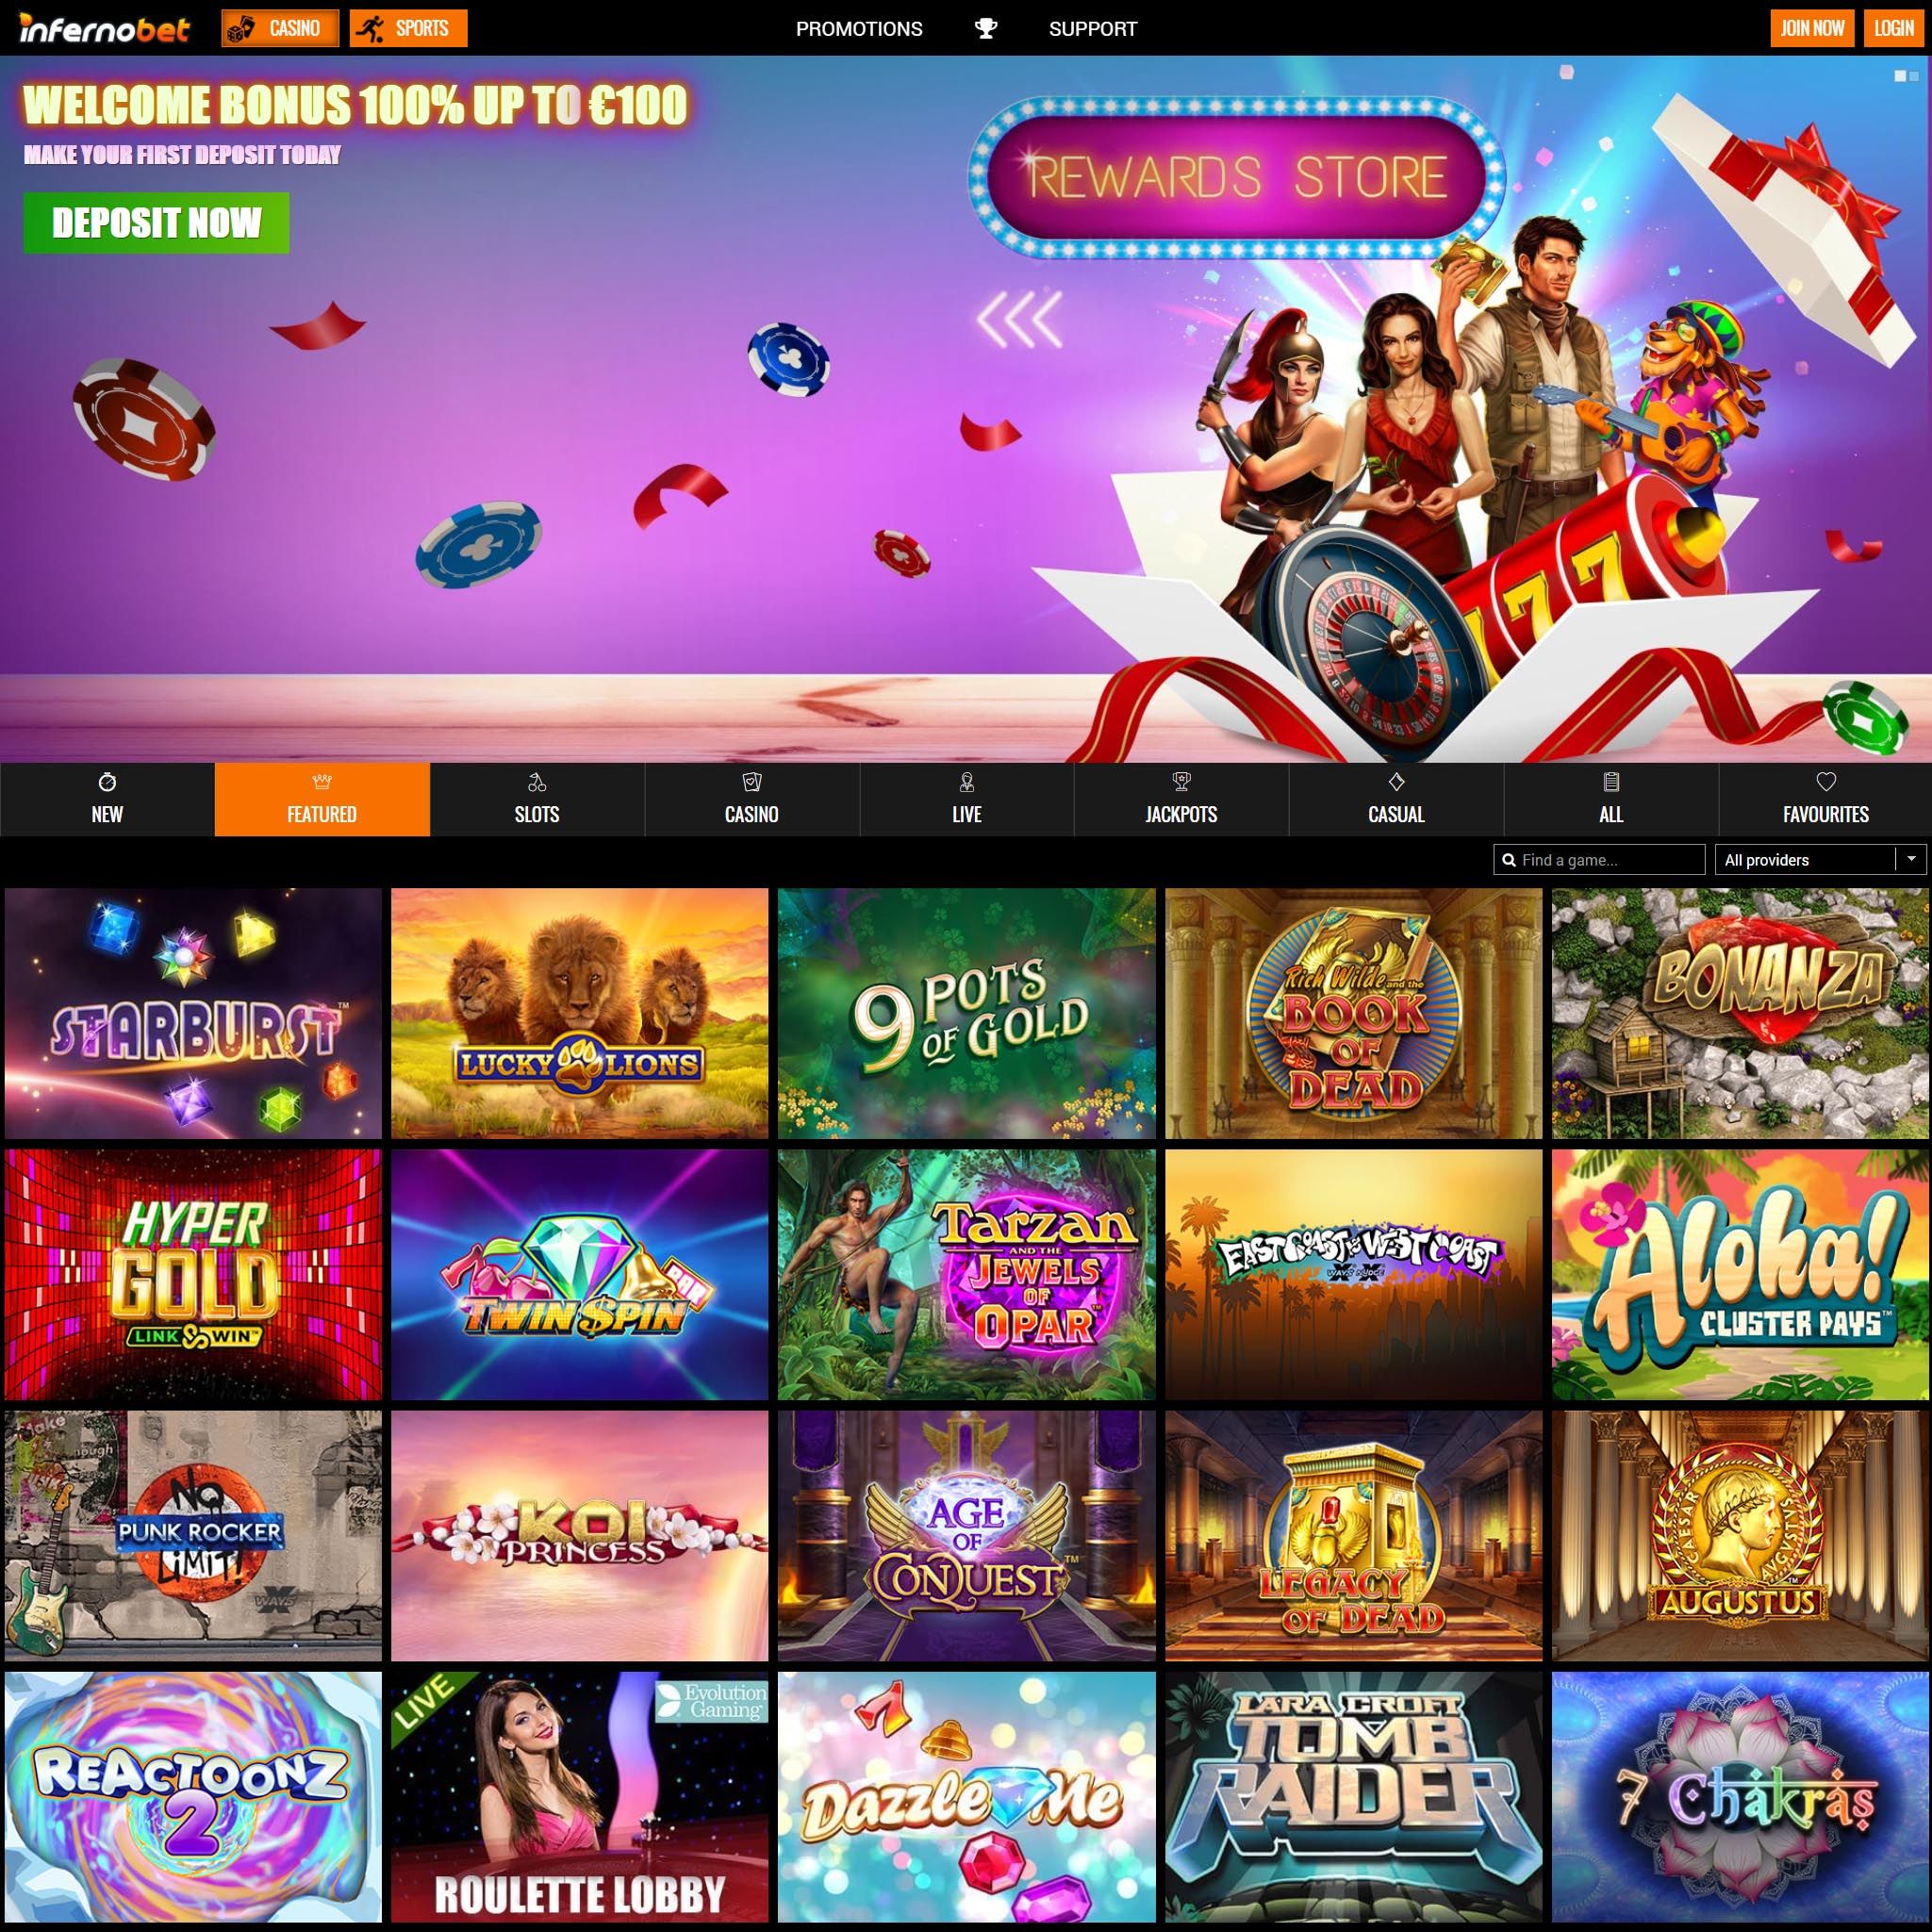 Bet casino gambling online sports betting игры для мальчиков бесплатно онлайн игровые автоматы